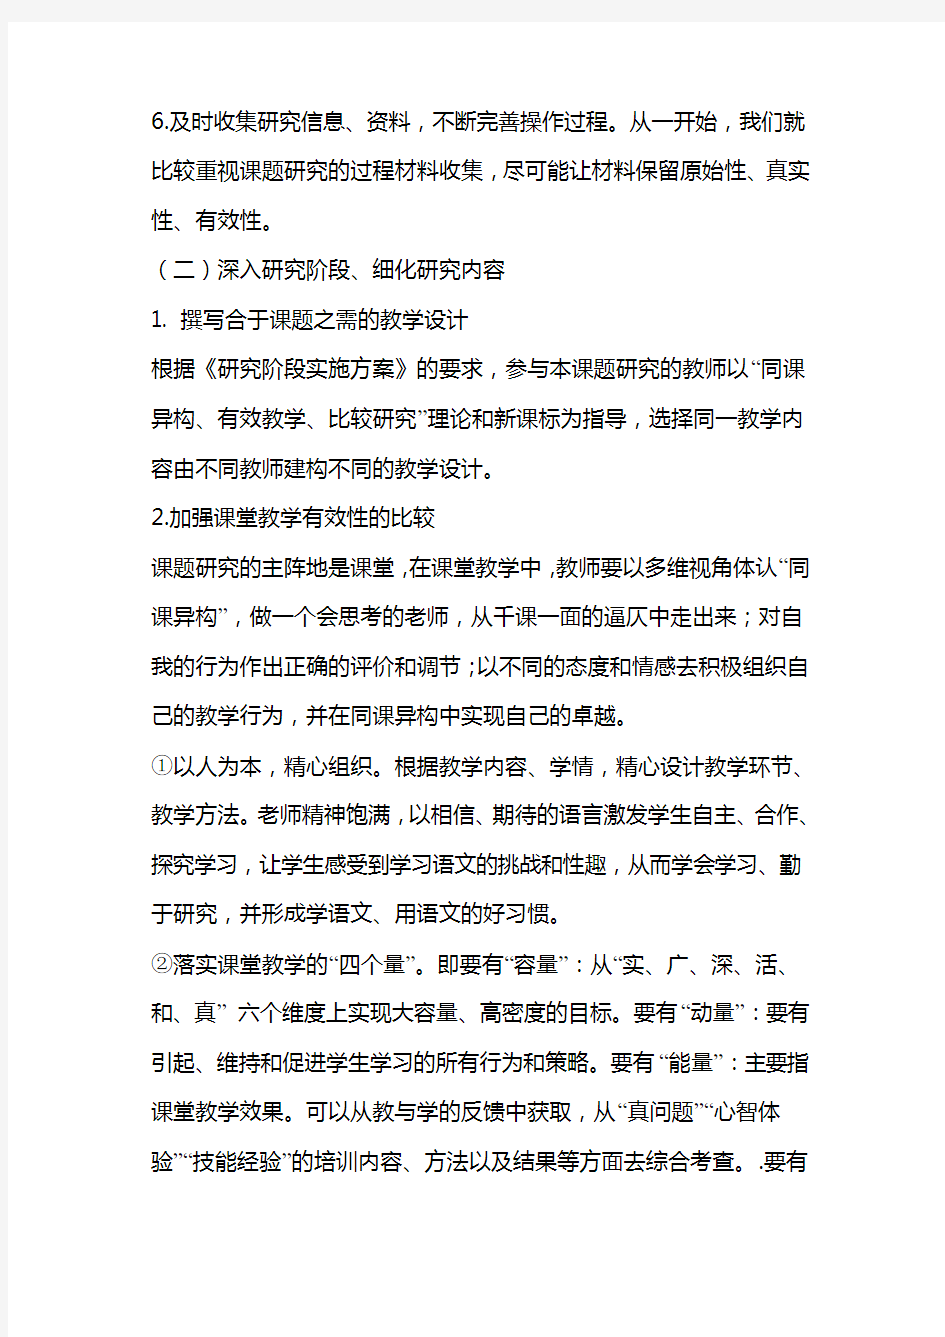 初中语文课堂进行有效提问的方法课题研究中期报告